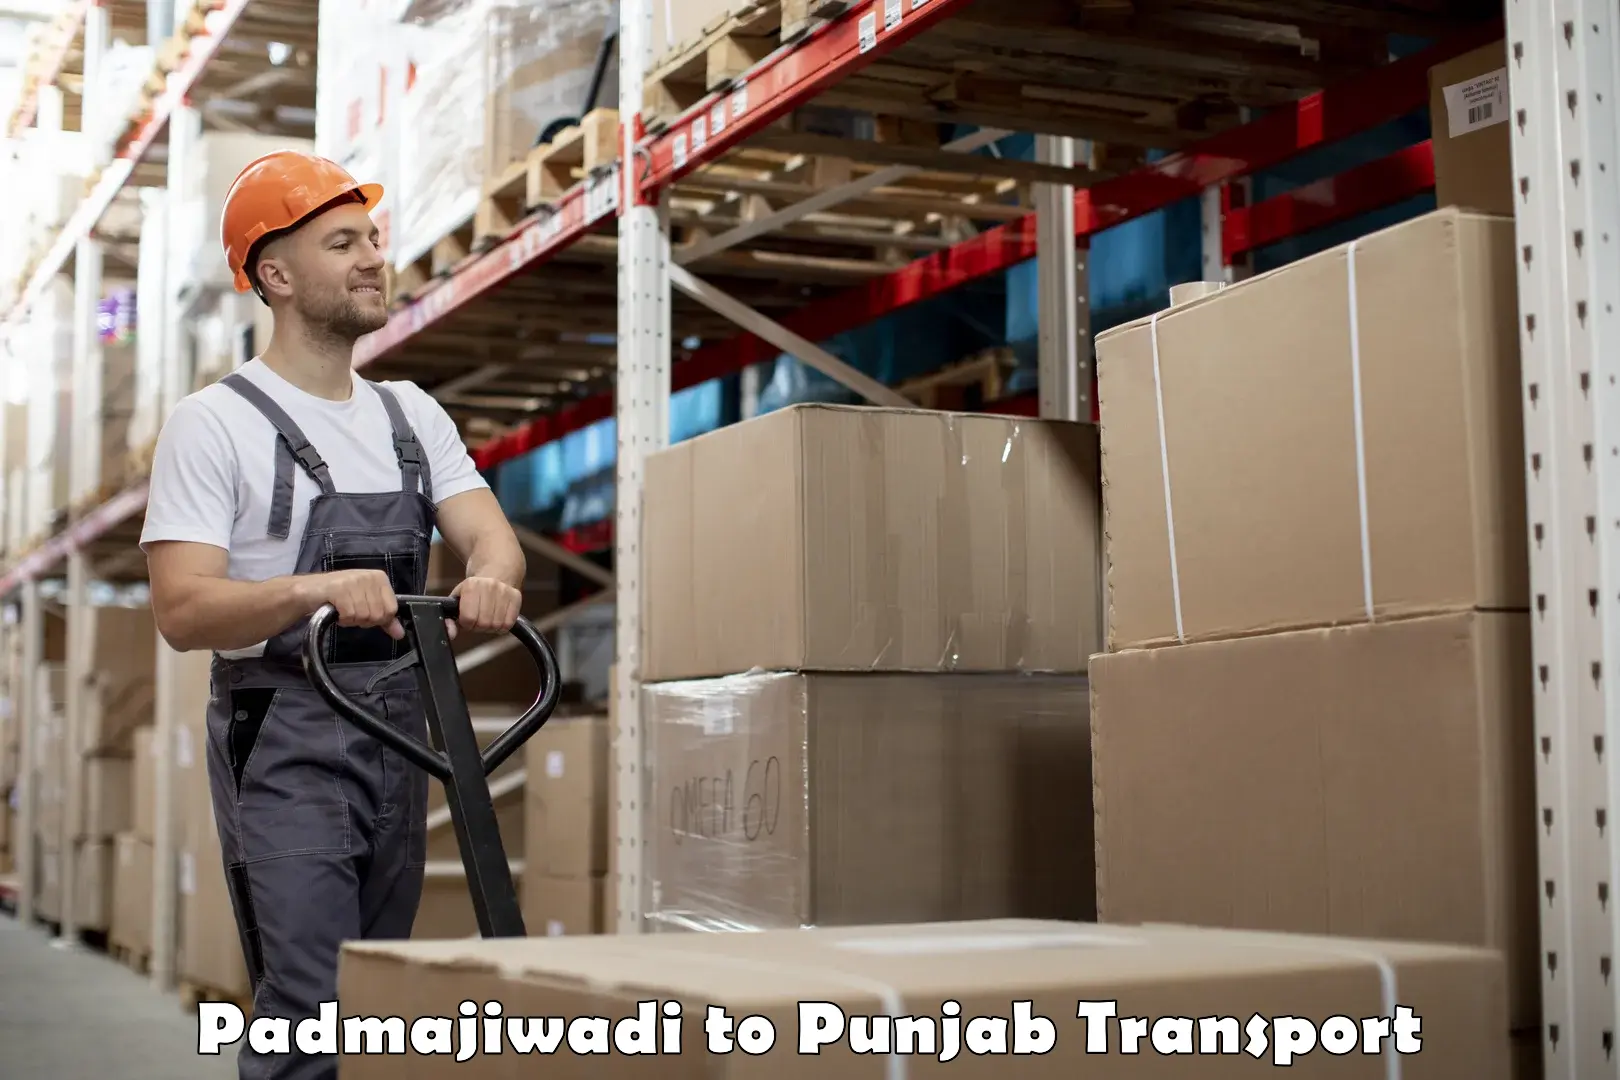 Furniture transport service Padmajiwadi to Kotkapura